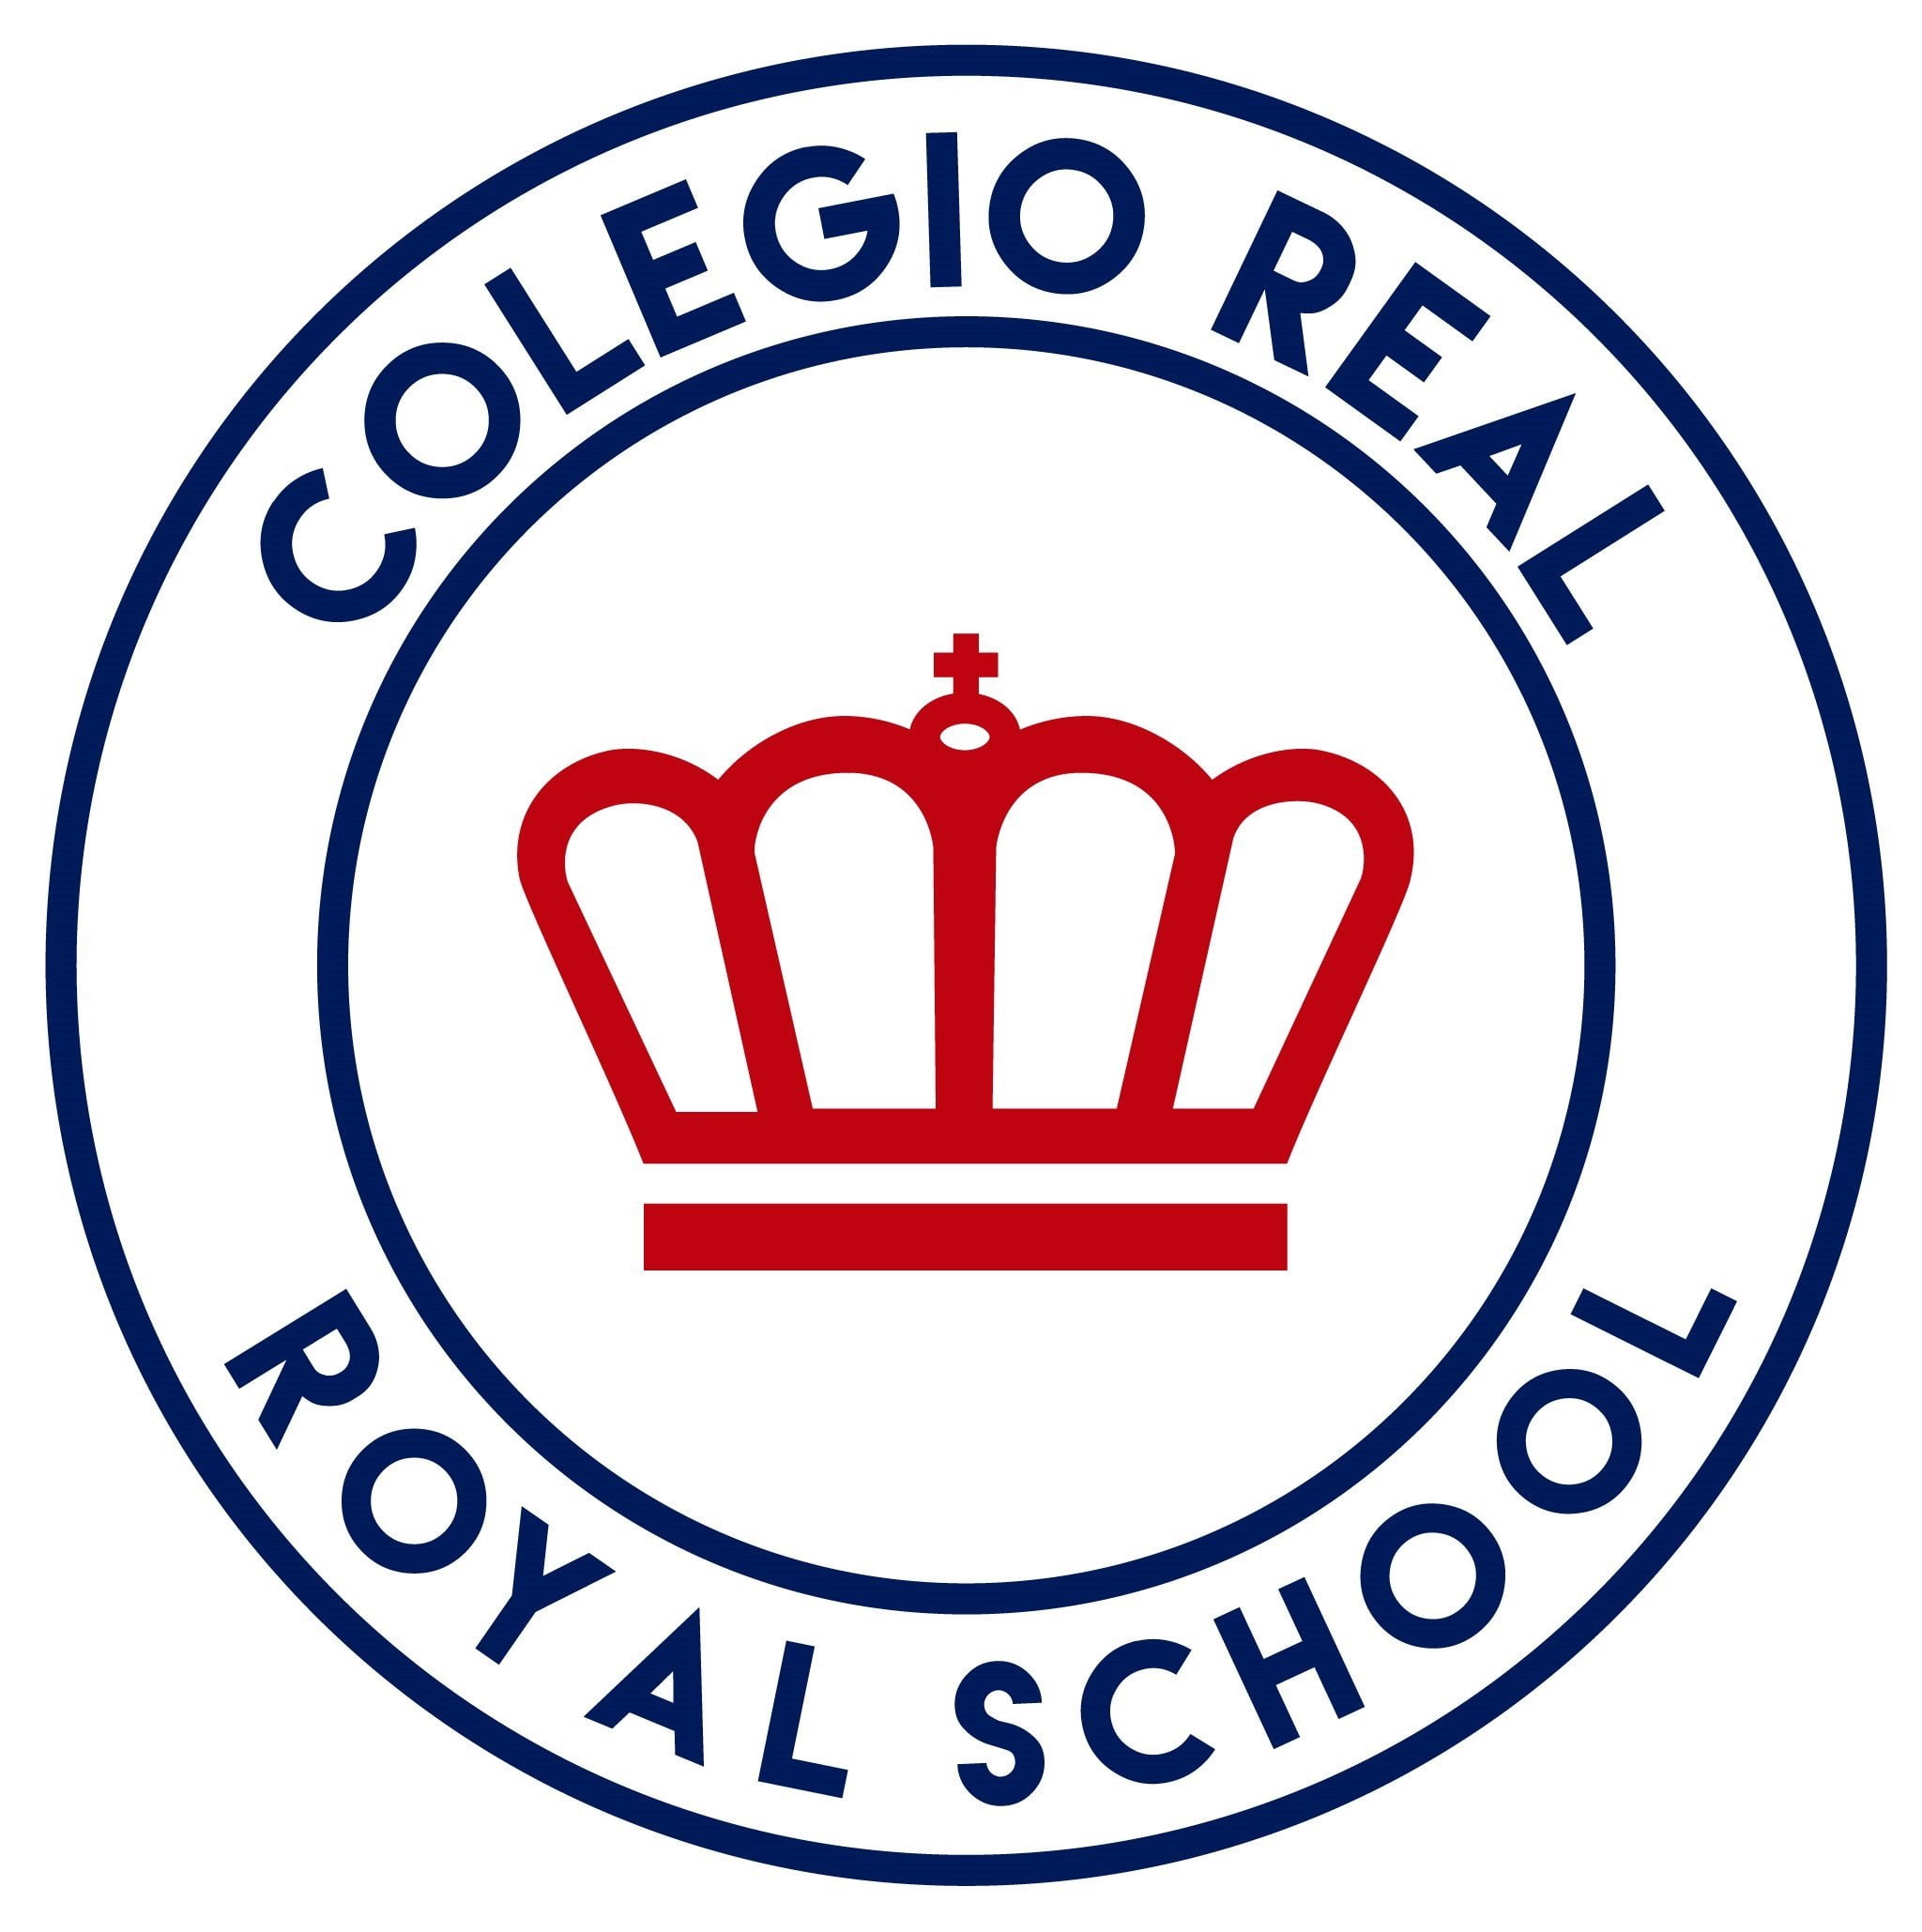 Colegio Real Royal School (Barranquilla)